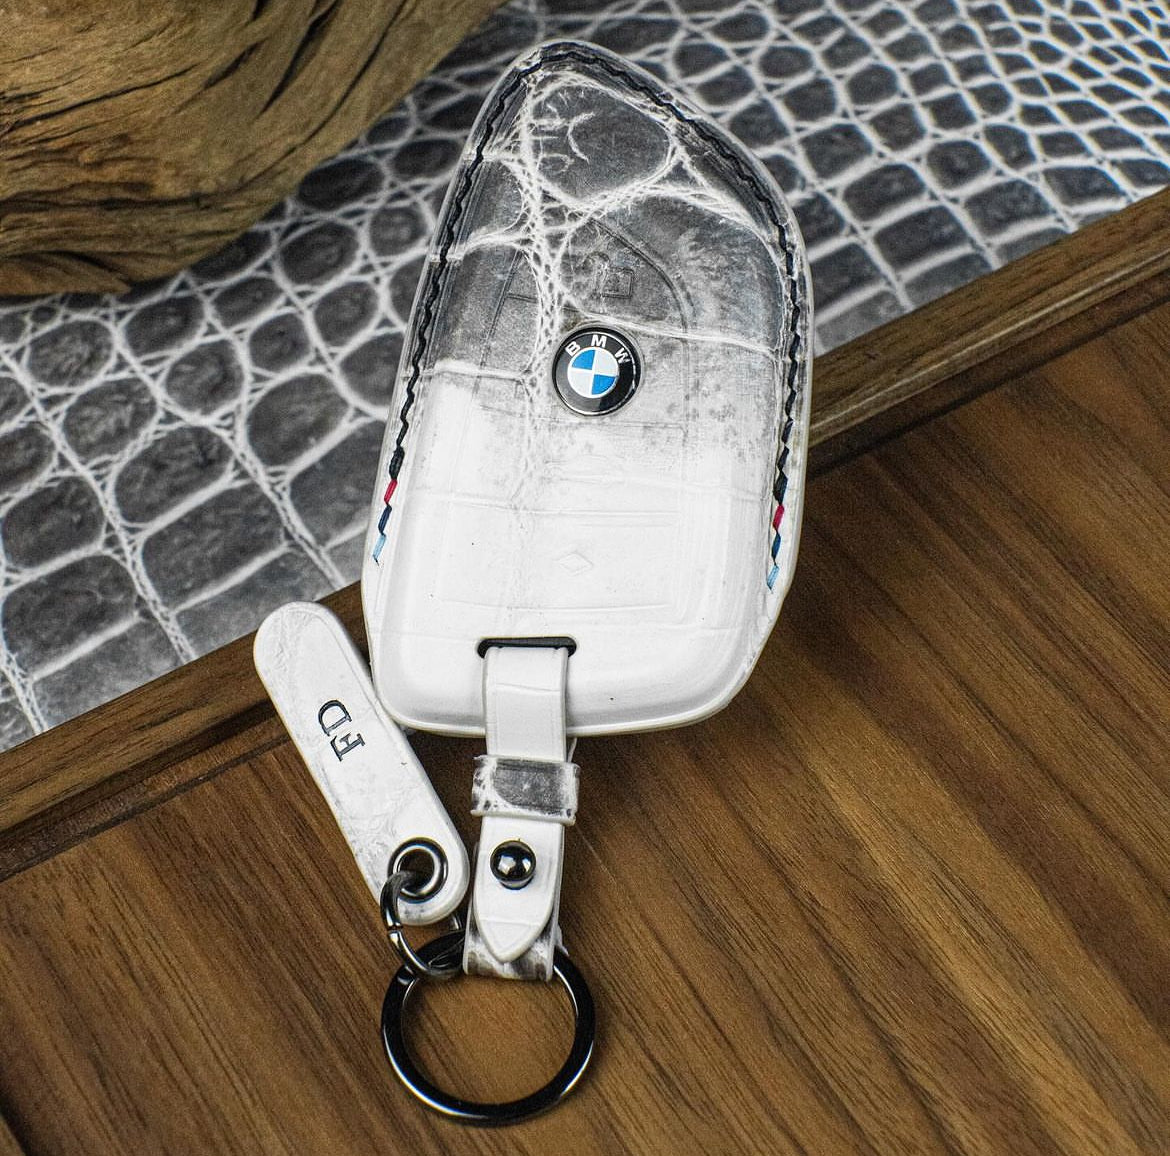 غطاء مفتاح BMW موديل النوع 1 - اطلبه حسب طلبك